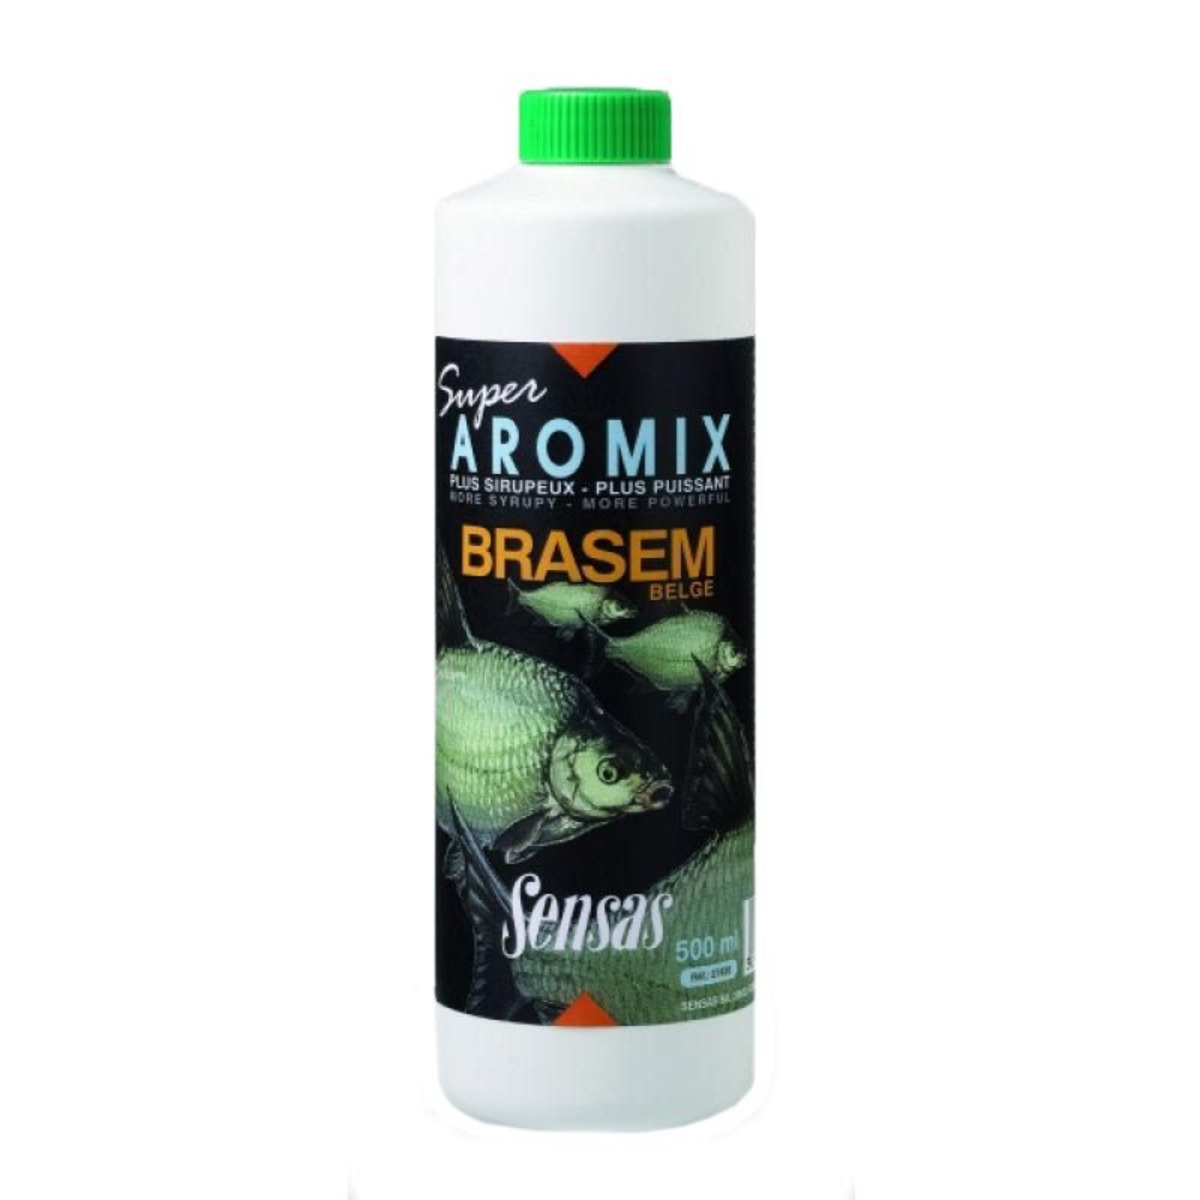 Sensas Super Aromix - Brasem Belge - 500 ml